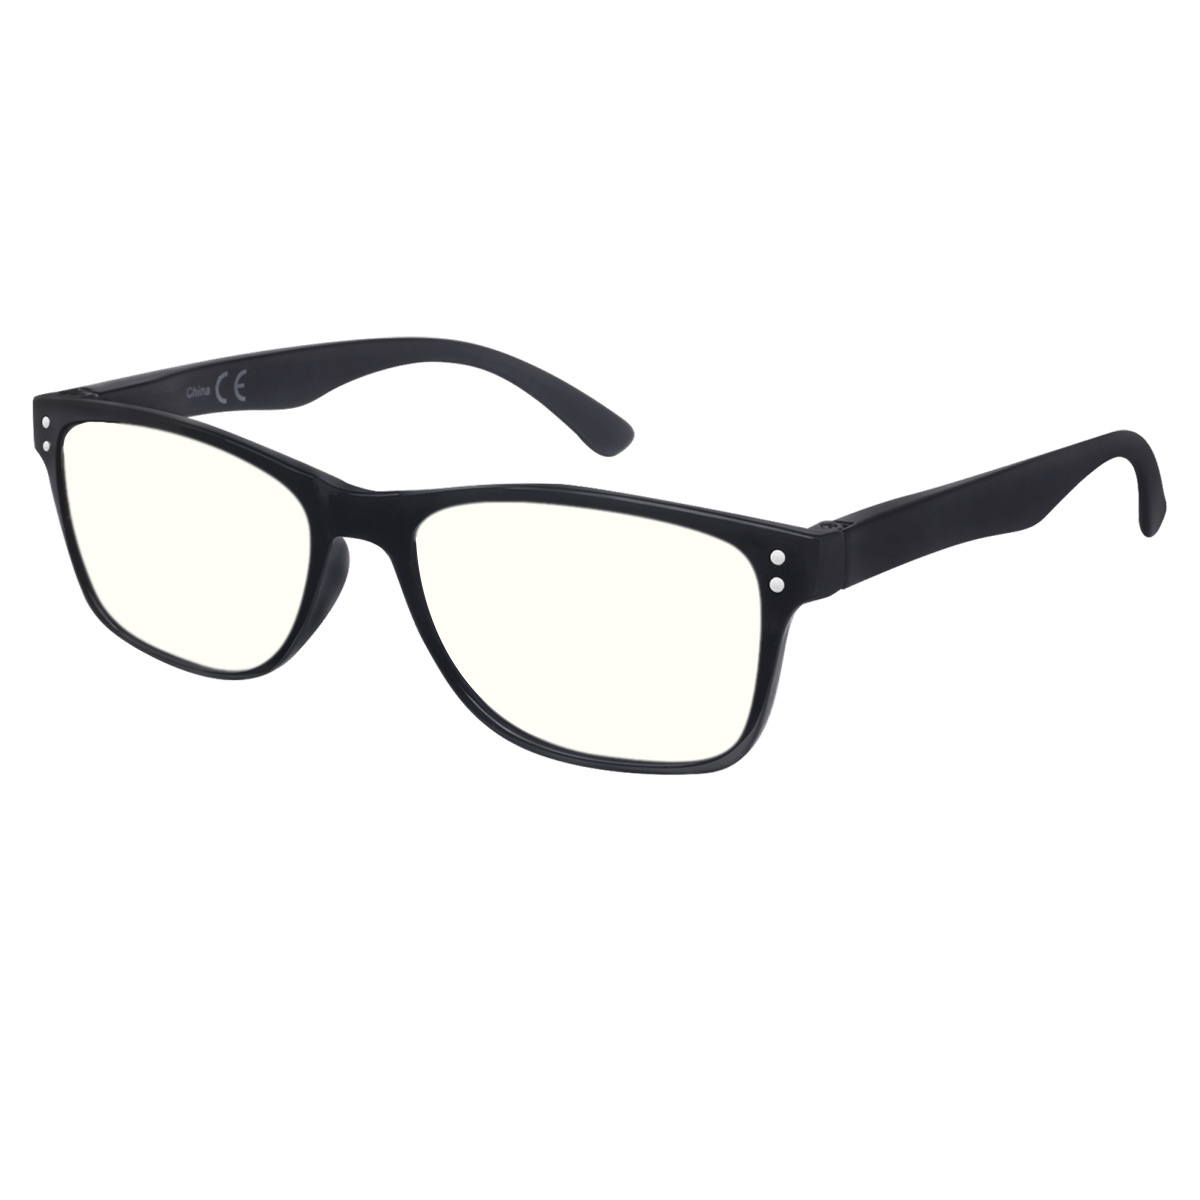 Agis - Rectangle Black Reading Glasses for Men & Women